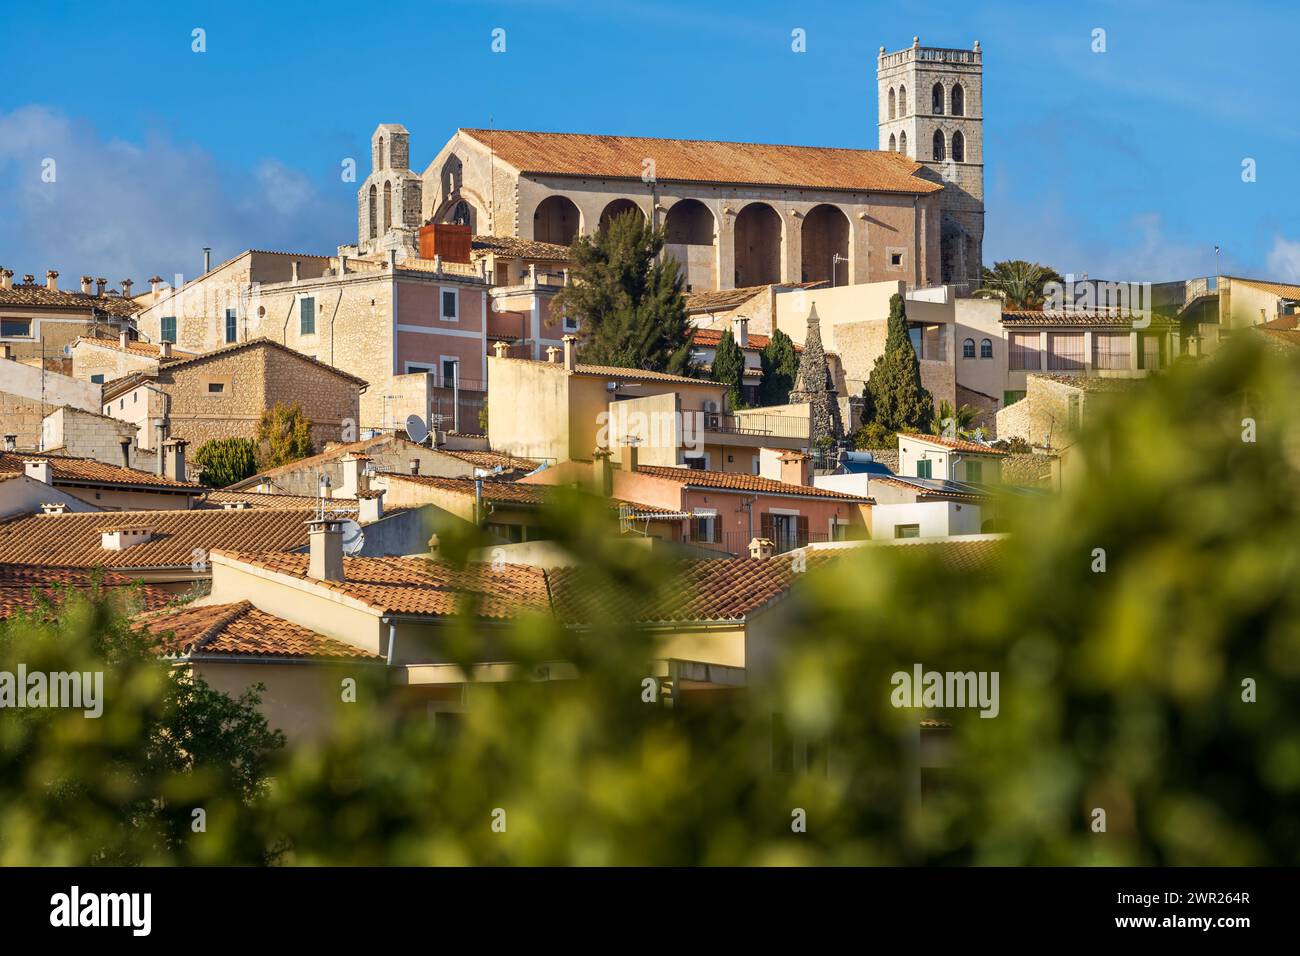 Villagescape von Selva mit gotischer und katholischer Pfarrkirche Església de Sant Llorenc, Mallorca, Balearen, Spanien, Europa Stockfoto